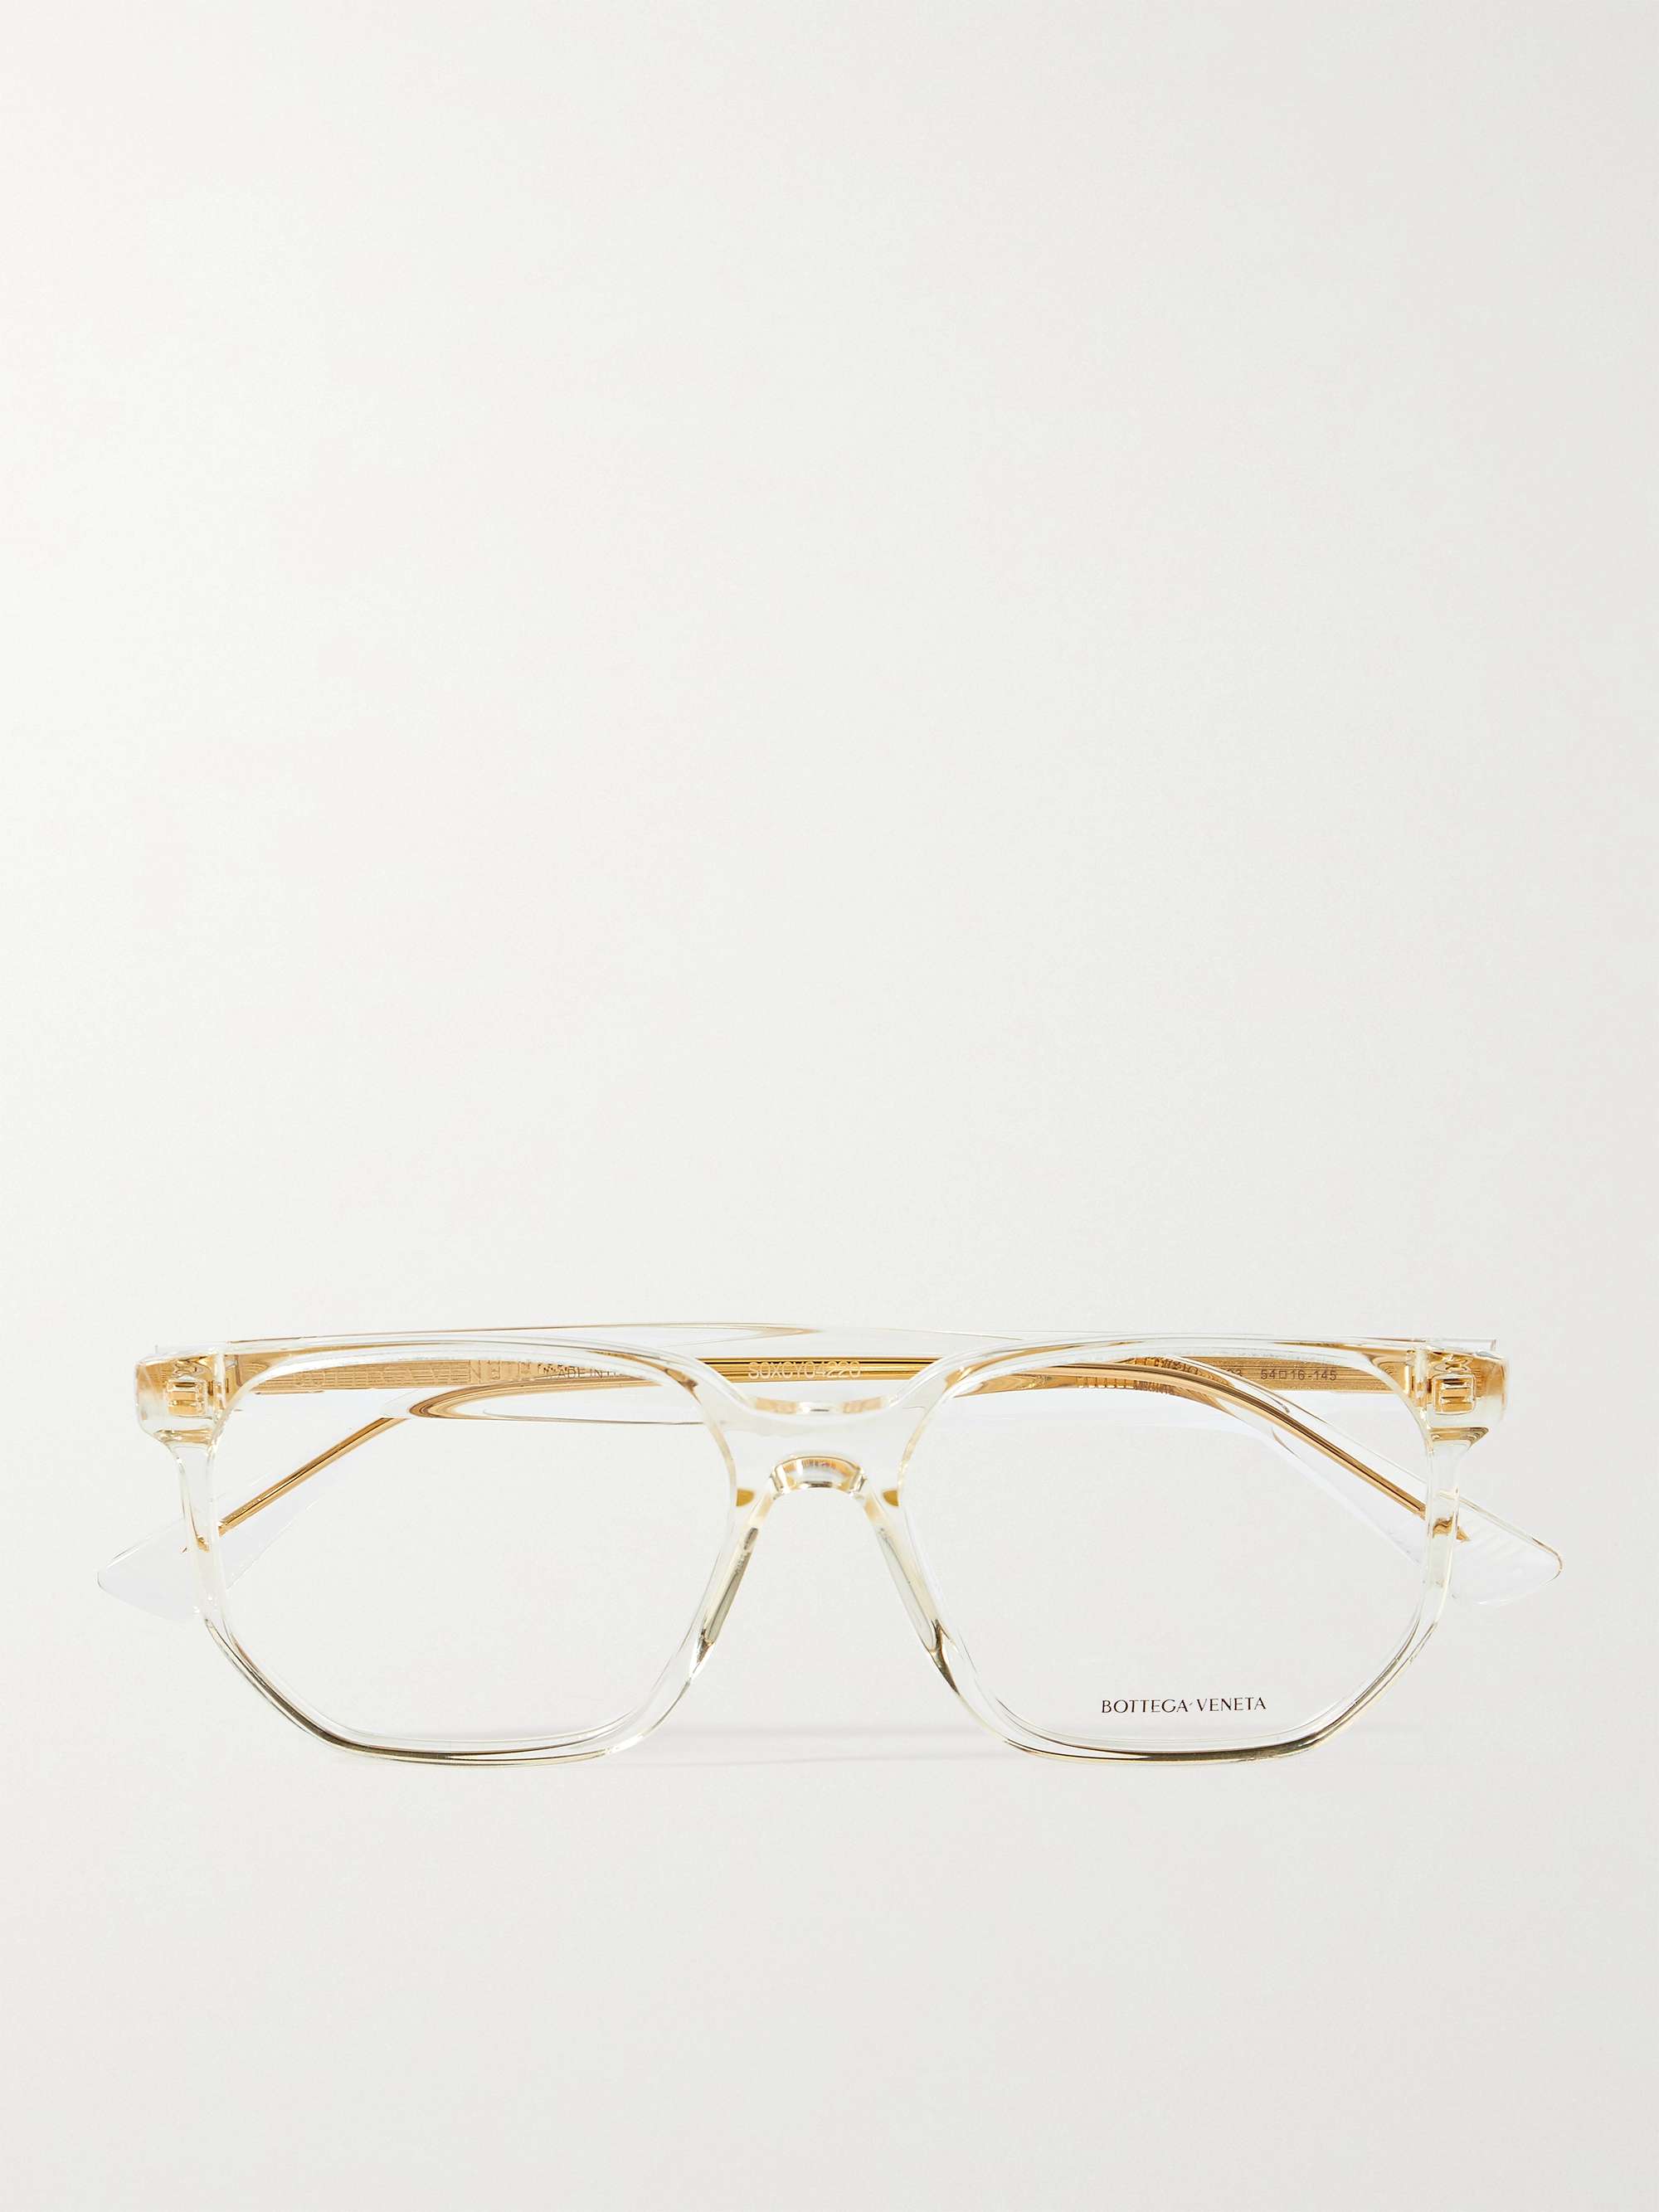 BOTTEGA VENETA EYEWEAR D-Frame Acetate Optical Glasses for Men | MR PORTER